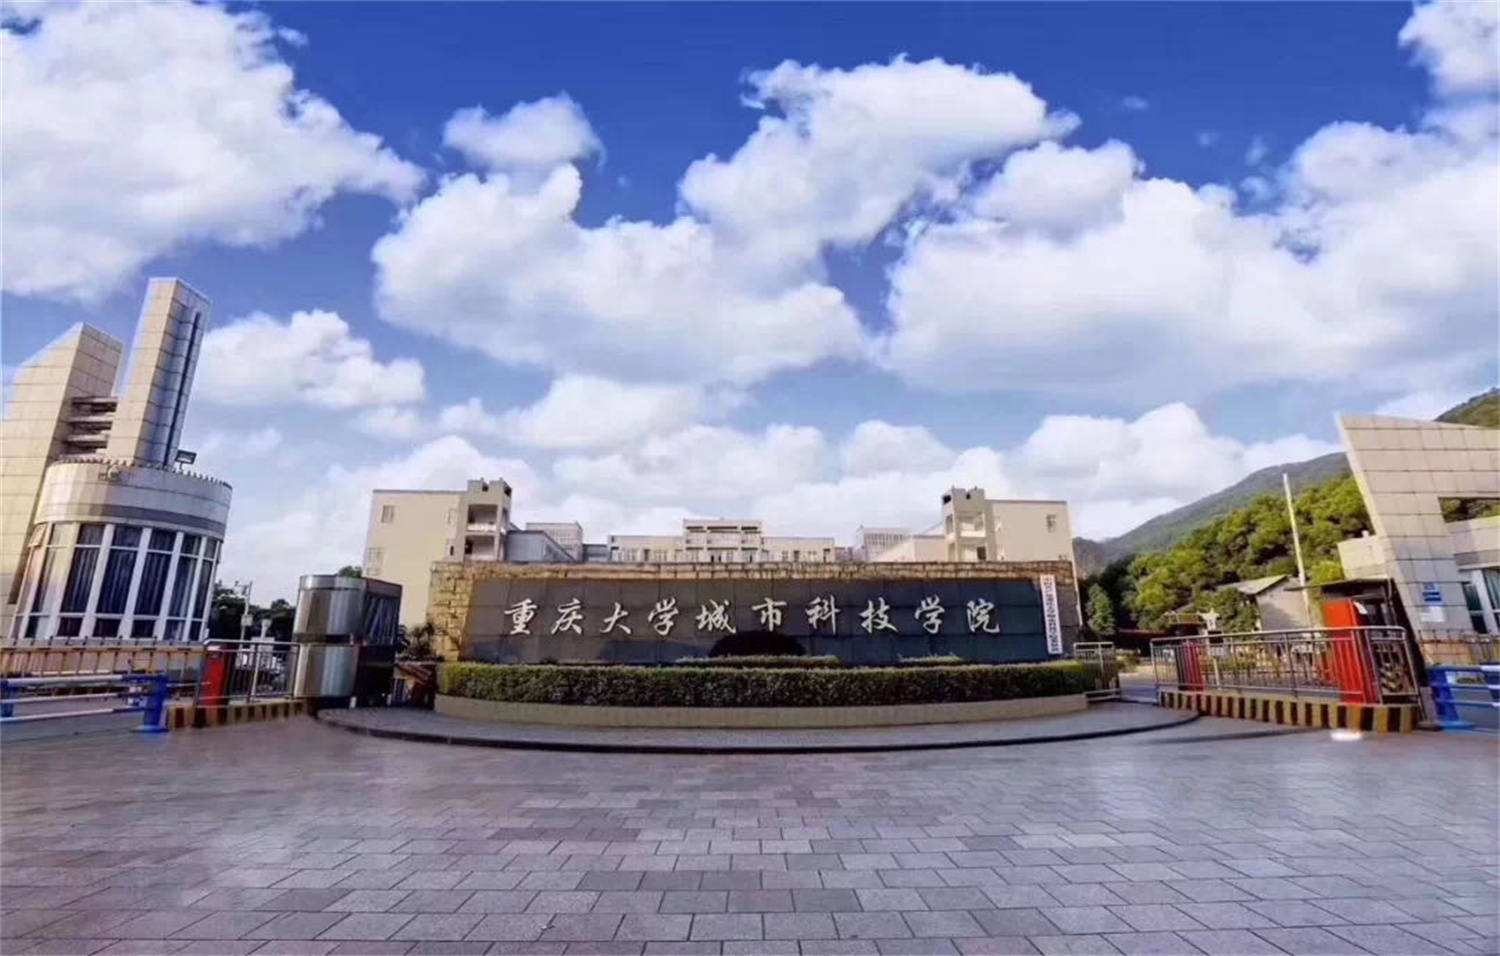 原创重庆城市科技学院:位于4a级景区,首个大规模集成电路诞生地